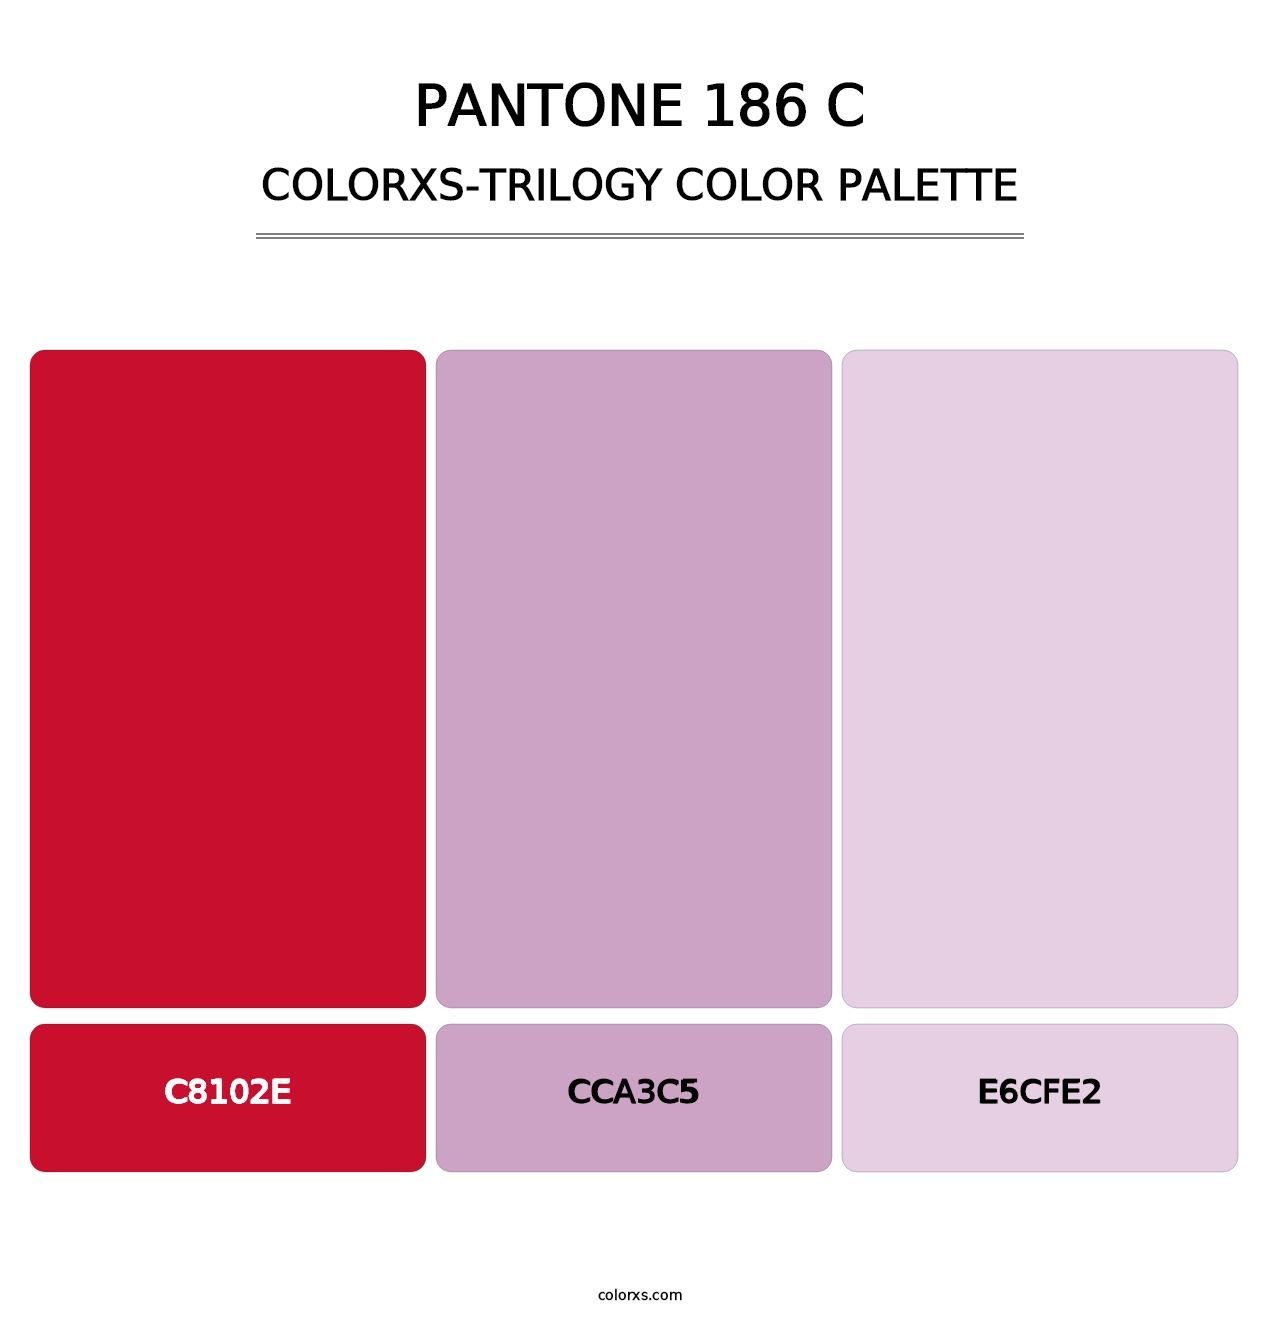 PANTONE 186 C - Colorxs Trilogy Palette